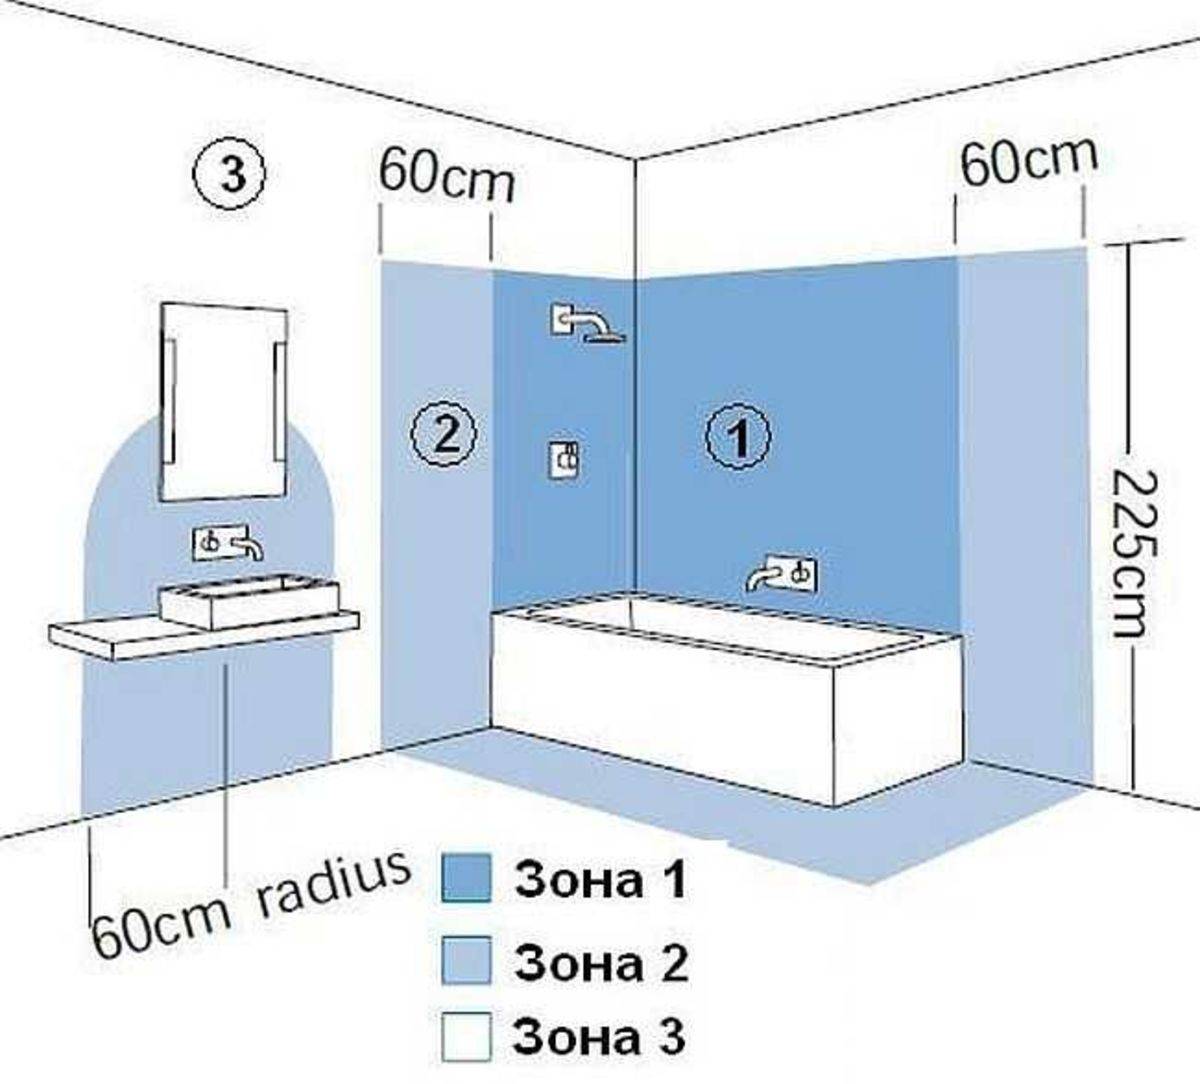 Установка розеток в ванной комнате: основные правила